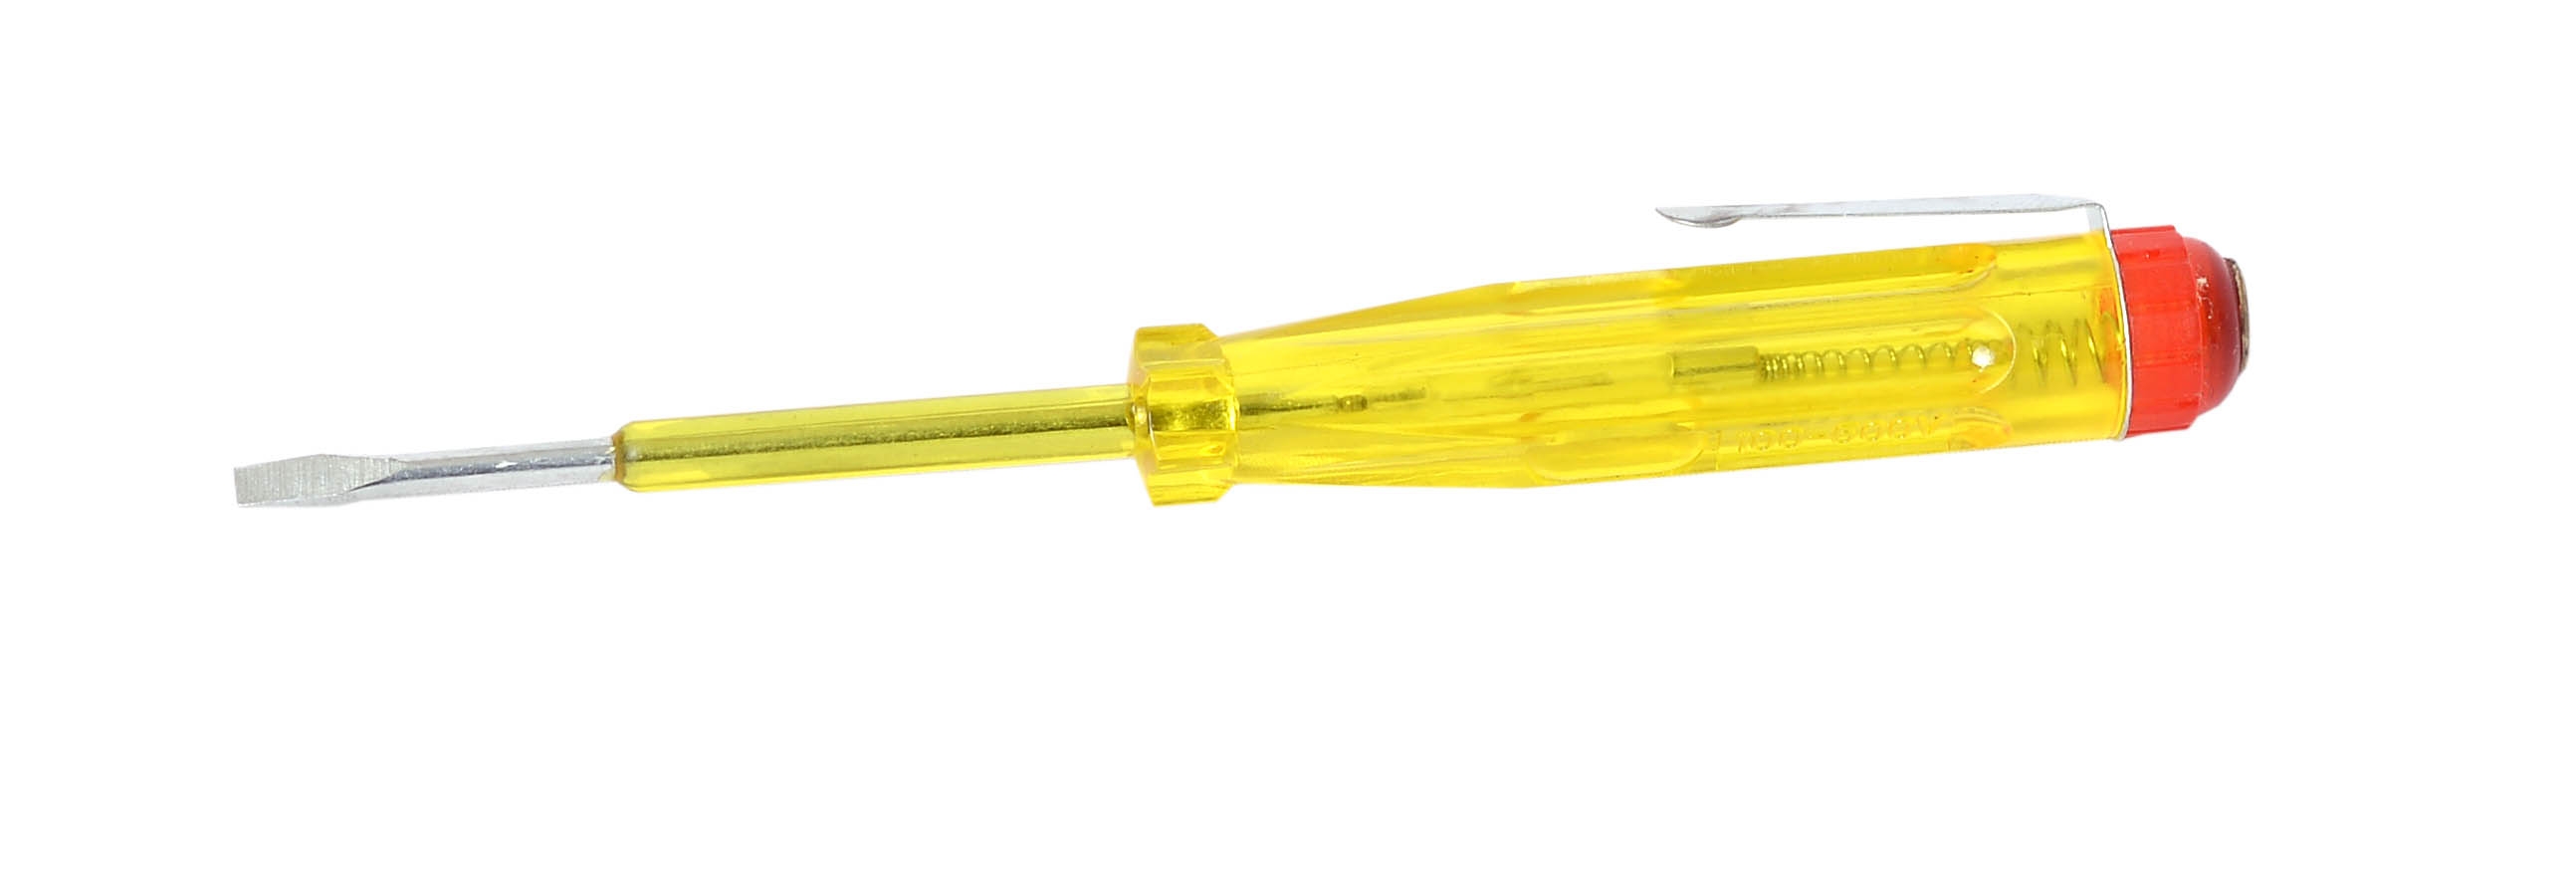 Отвертка индикаторная, желтая ручка 100-500 В, 140мм